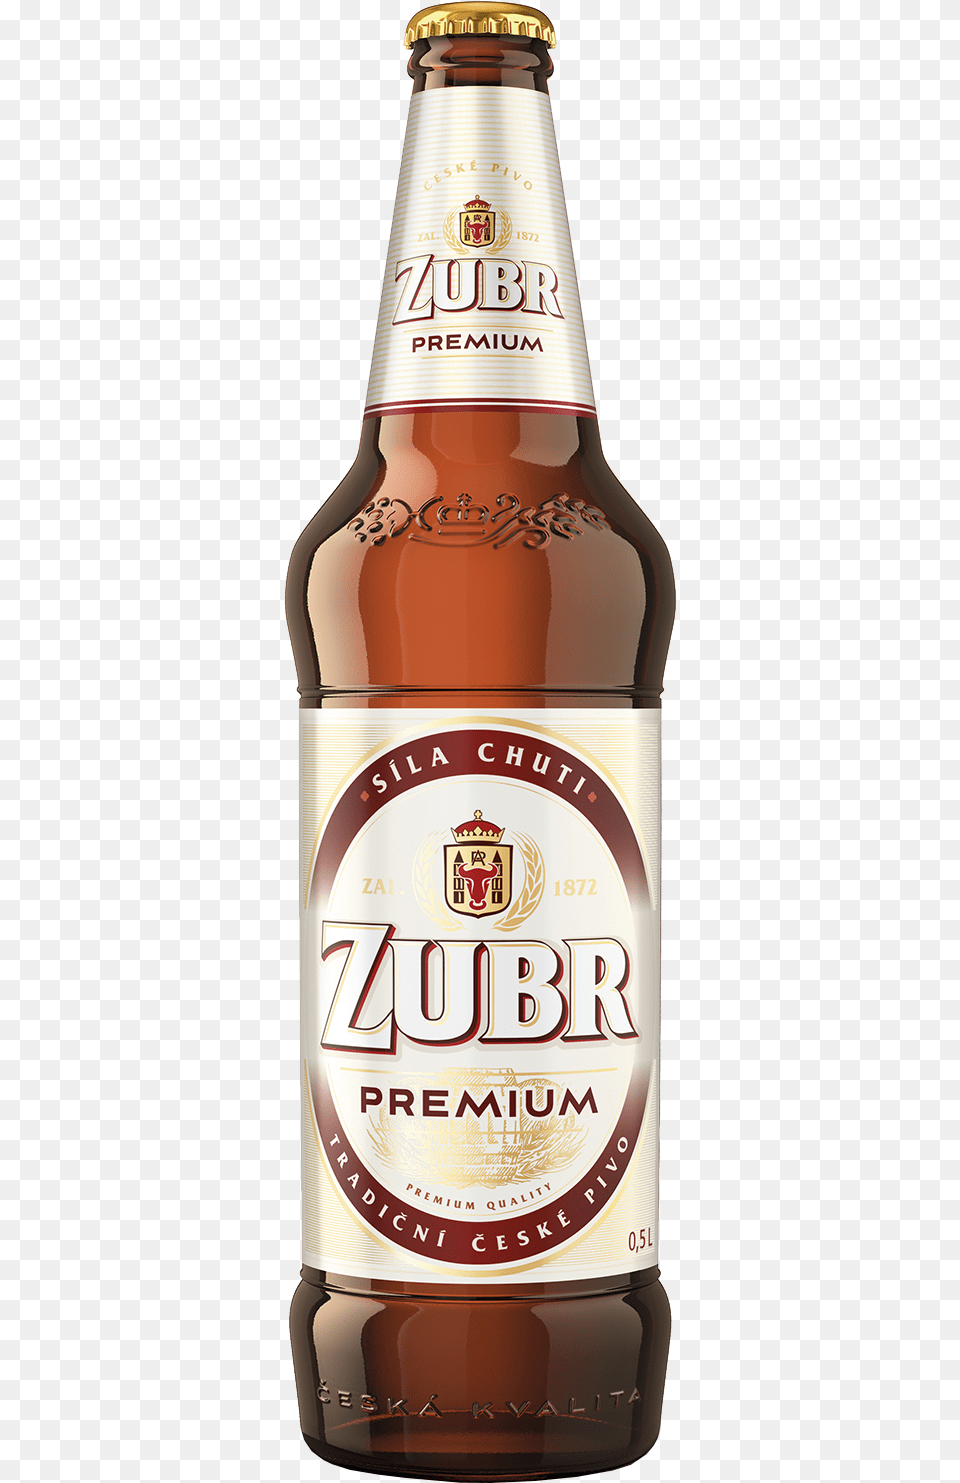 Zubr Premium Zubr, Alcohol, Beer, Beer Bottle, Beverage Free Png Download